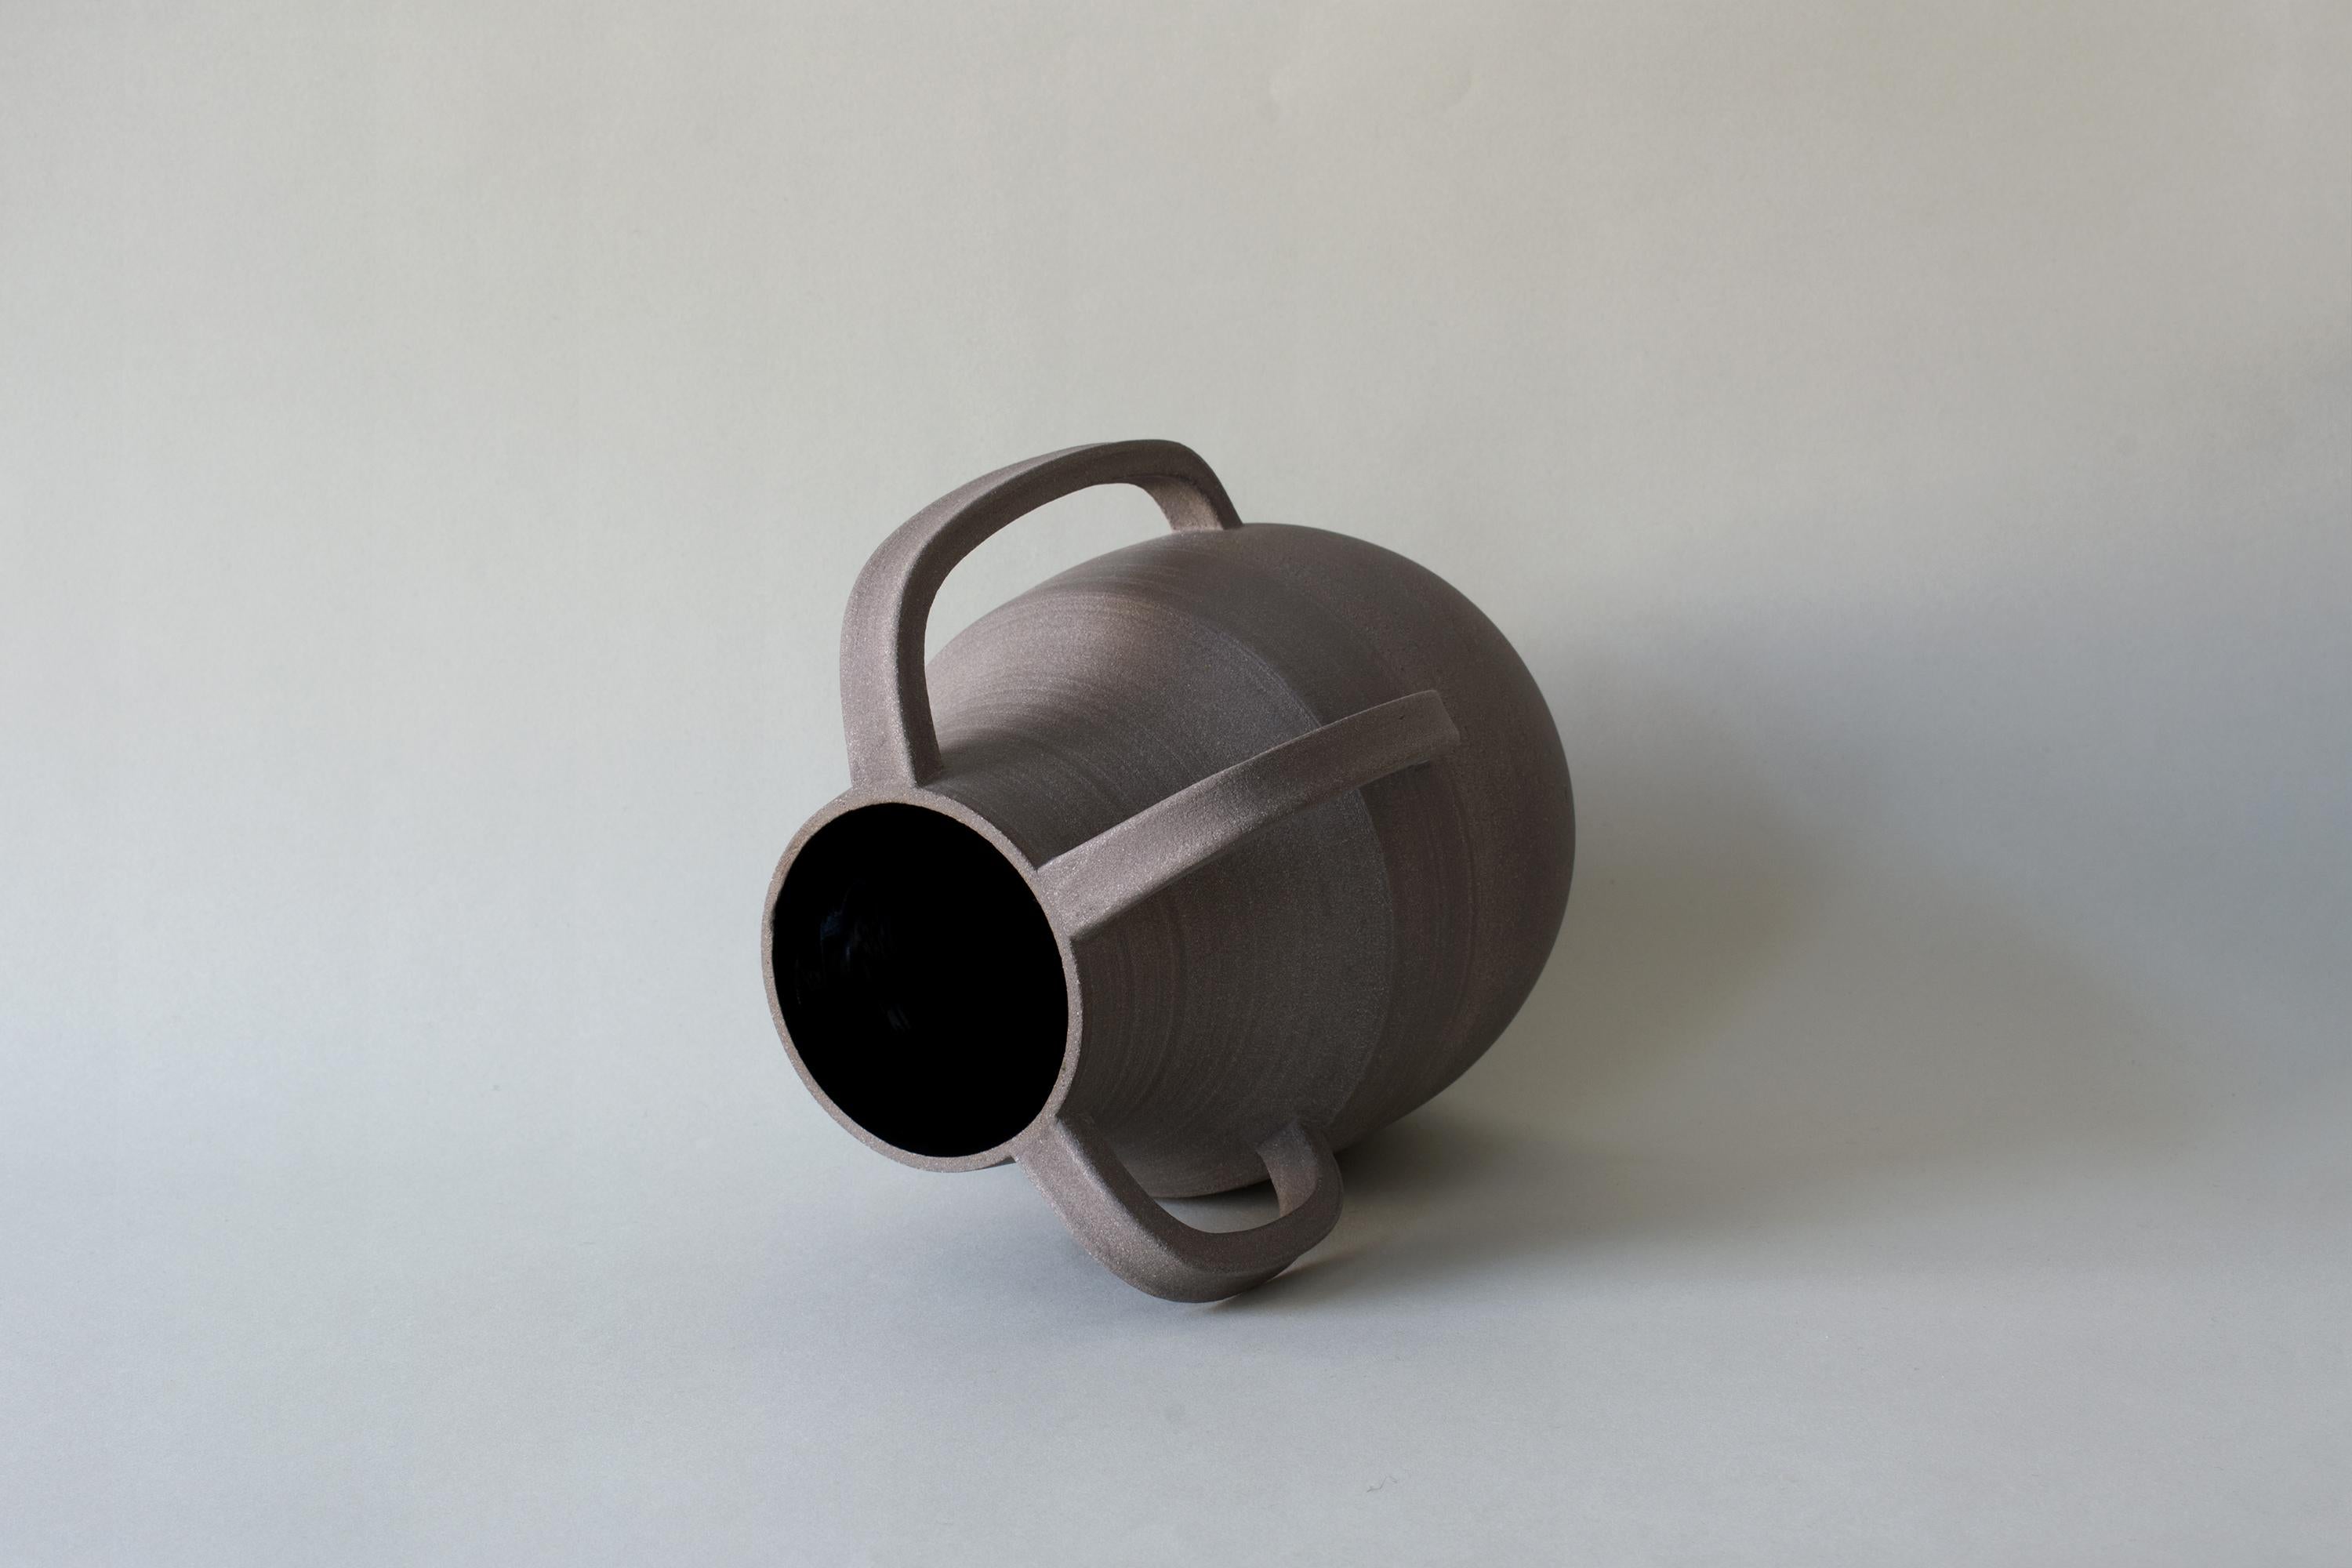 Clay Vase V3-6-14 by Roni Feiten